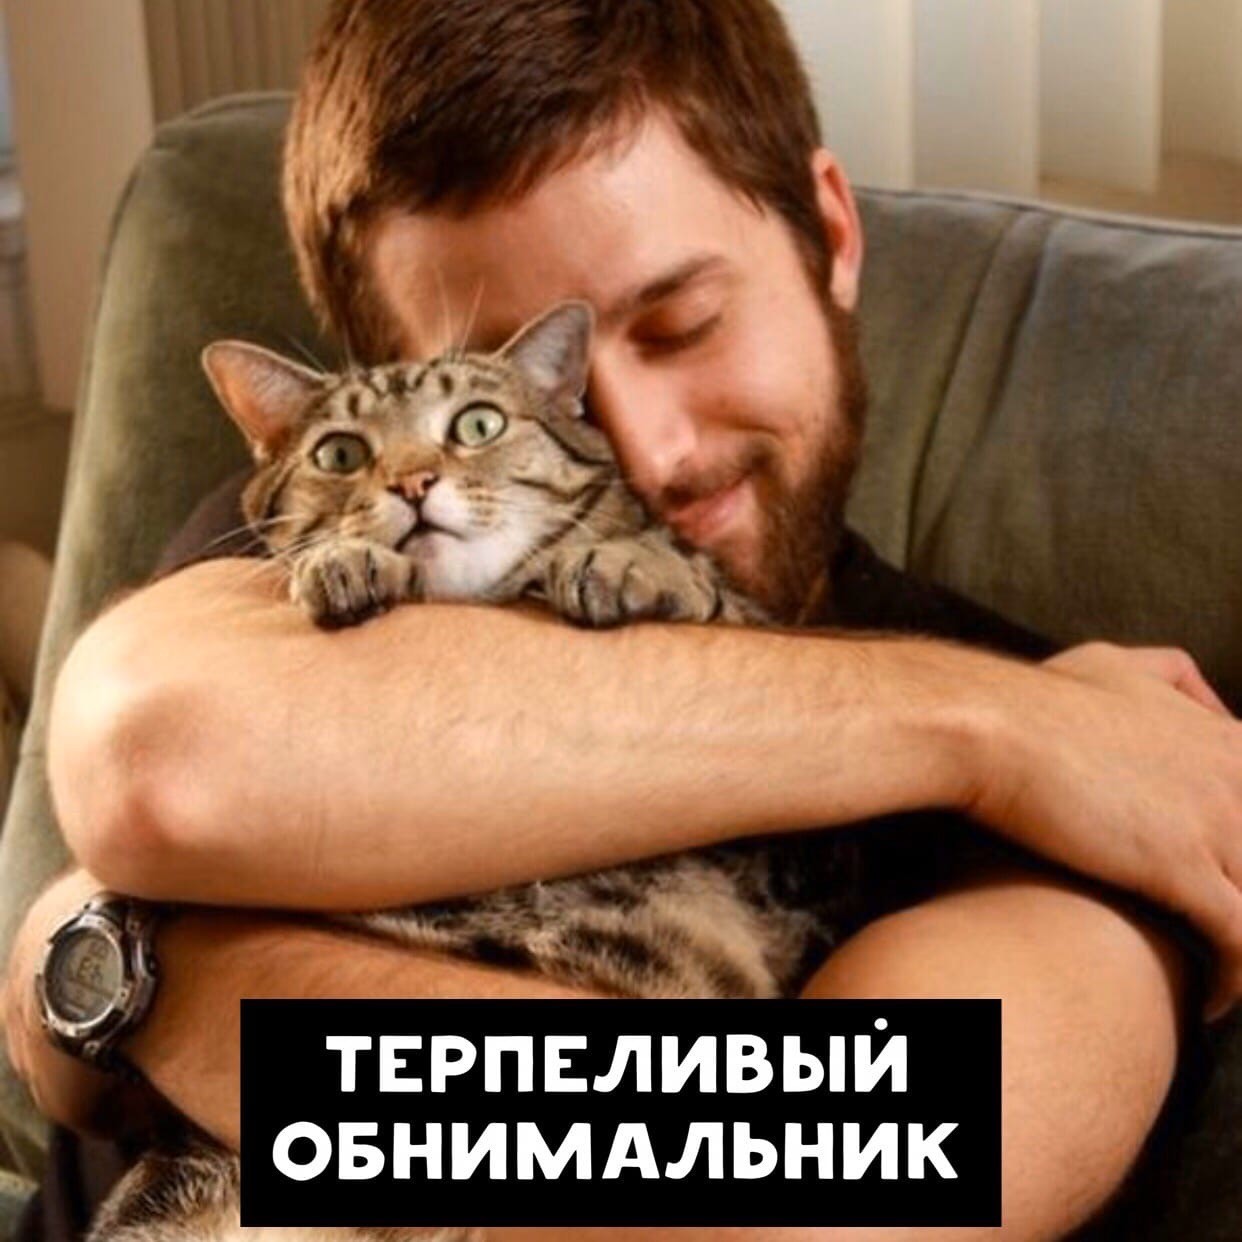 Включи человек и кот. Кот обнимает. Мужчина обнимает кота. Человек обнимает. Кот обнимает человека.